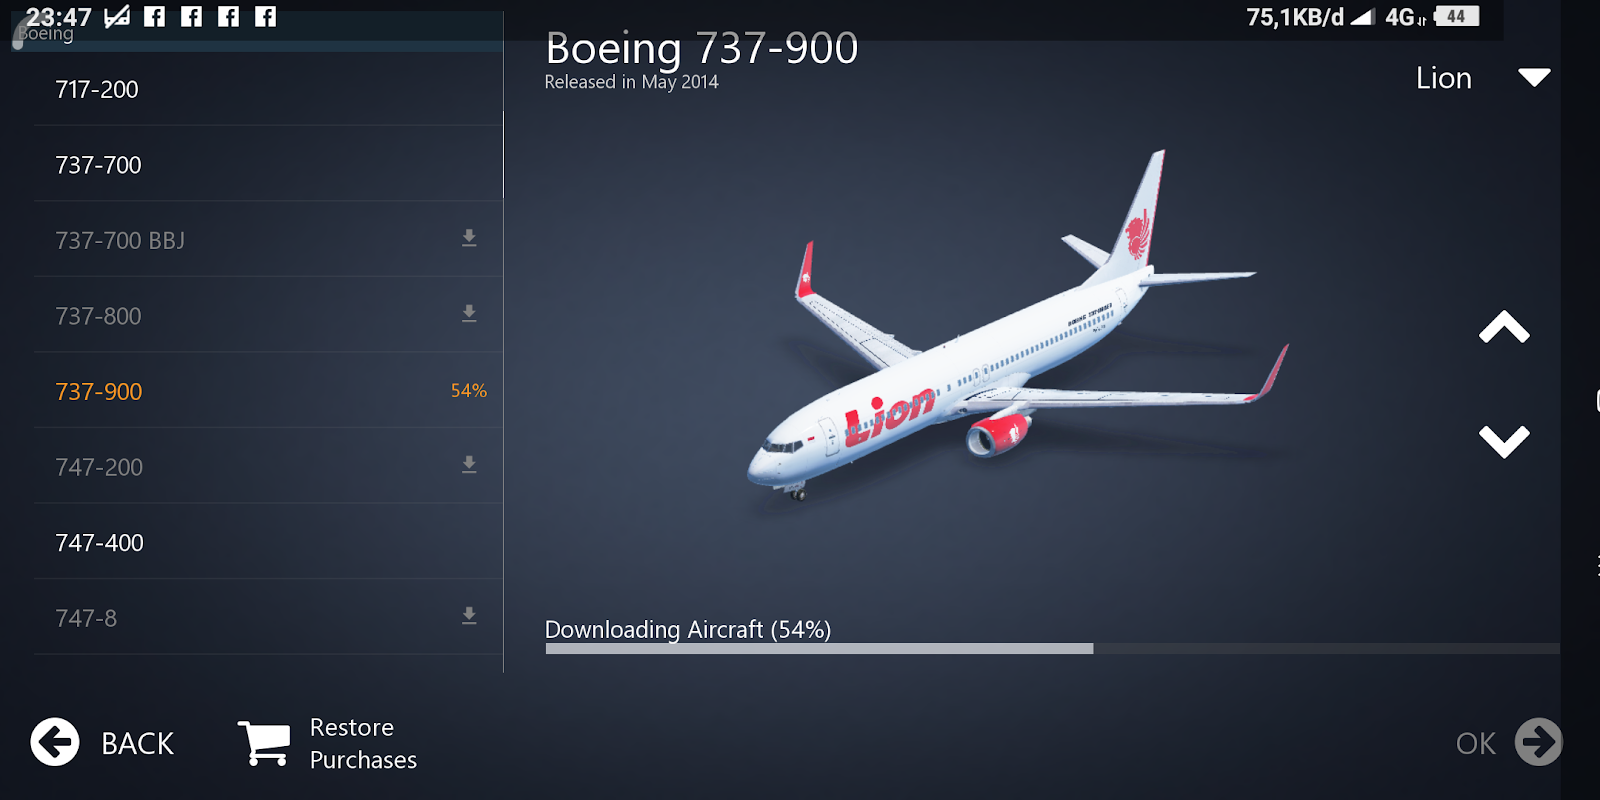 Boeing 737-800 скорость полёта. Боинг 737-800 высота полета. Скорость самолета Боинг 737 800. Боинг 737-700 Вингл.